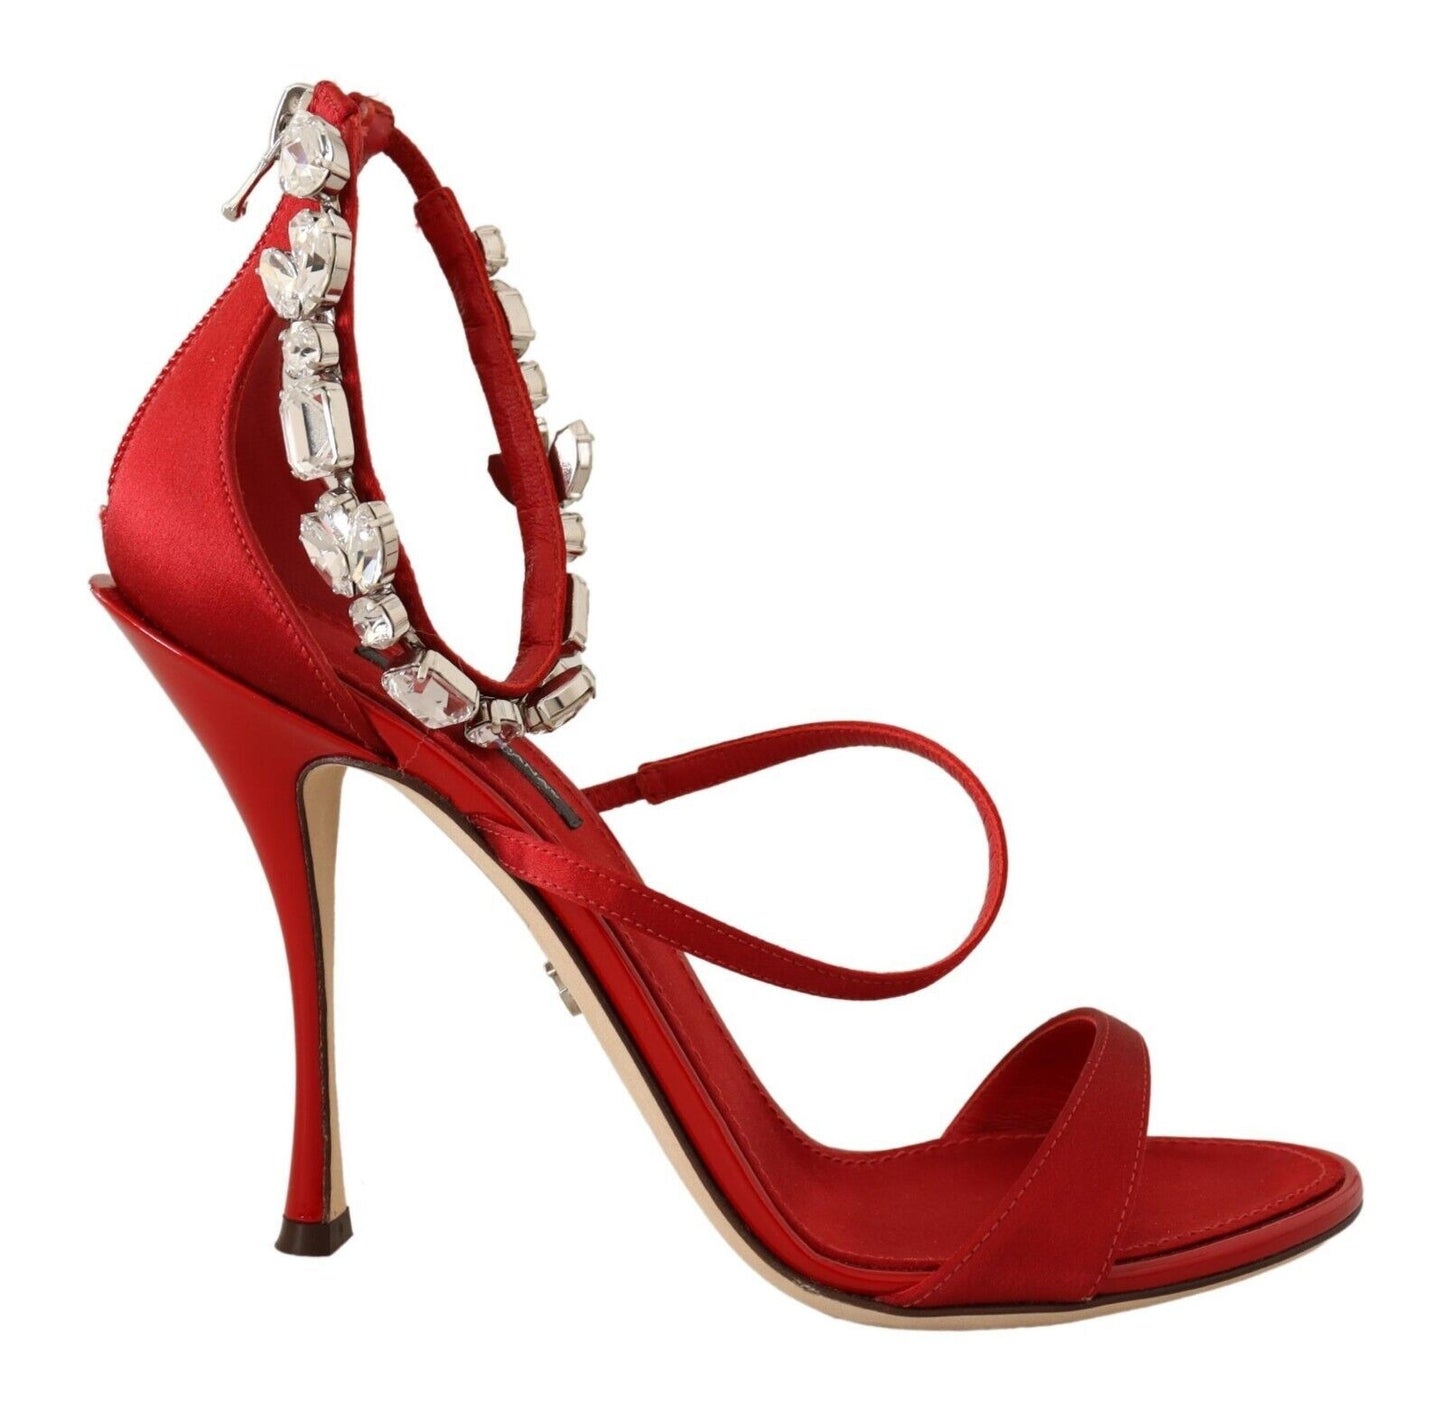 Red Crystal-Embellished Heel Sandals